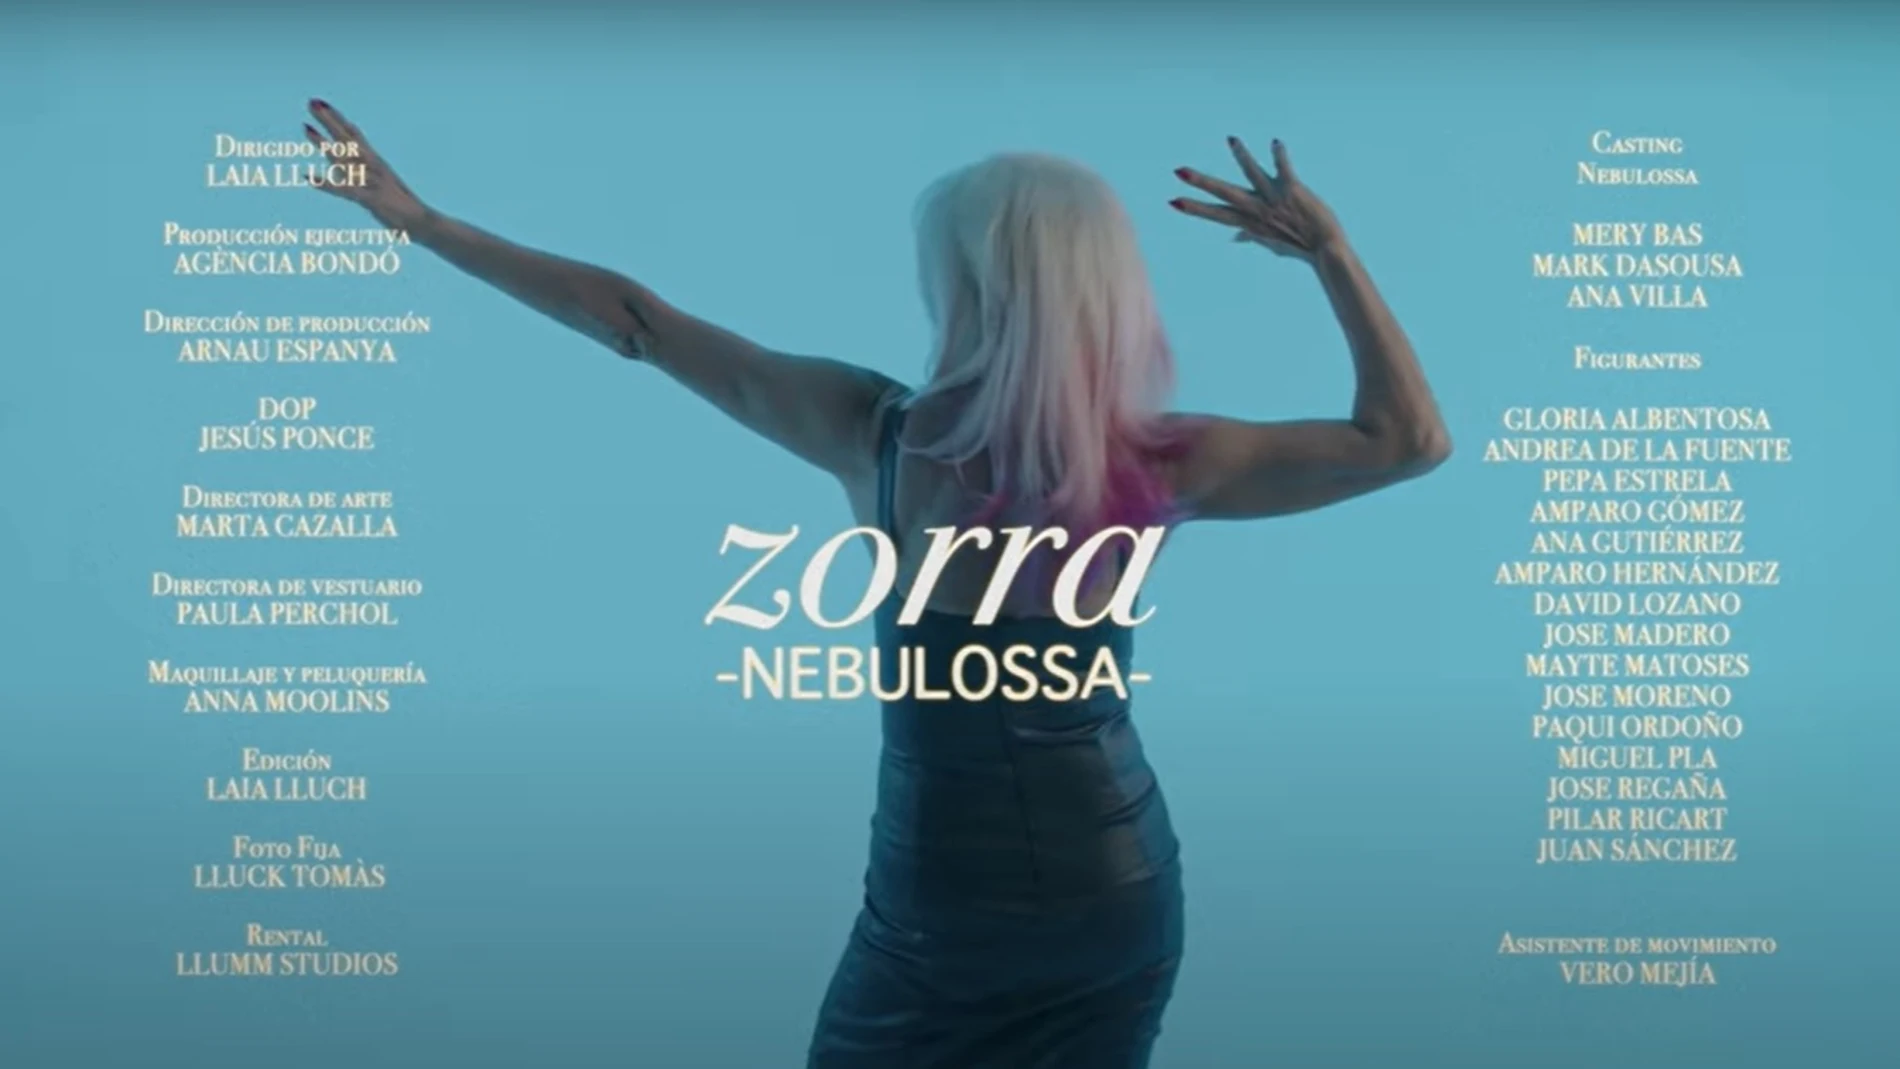 Letra de Zorra, la canción de Nebulossa, Este es el mensaje y la letra  completa de 'Zorra', la canción de Nebulossa en el Benidorm Fest